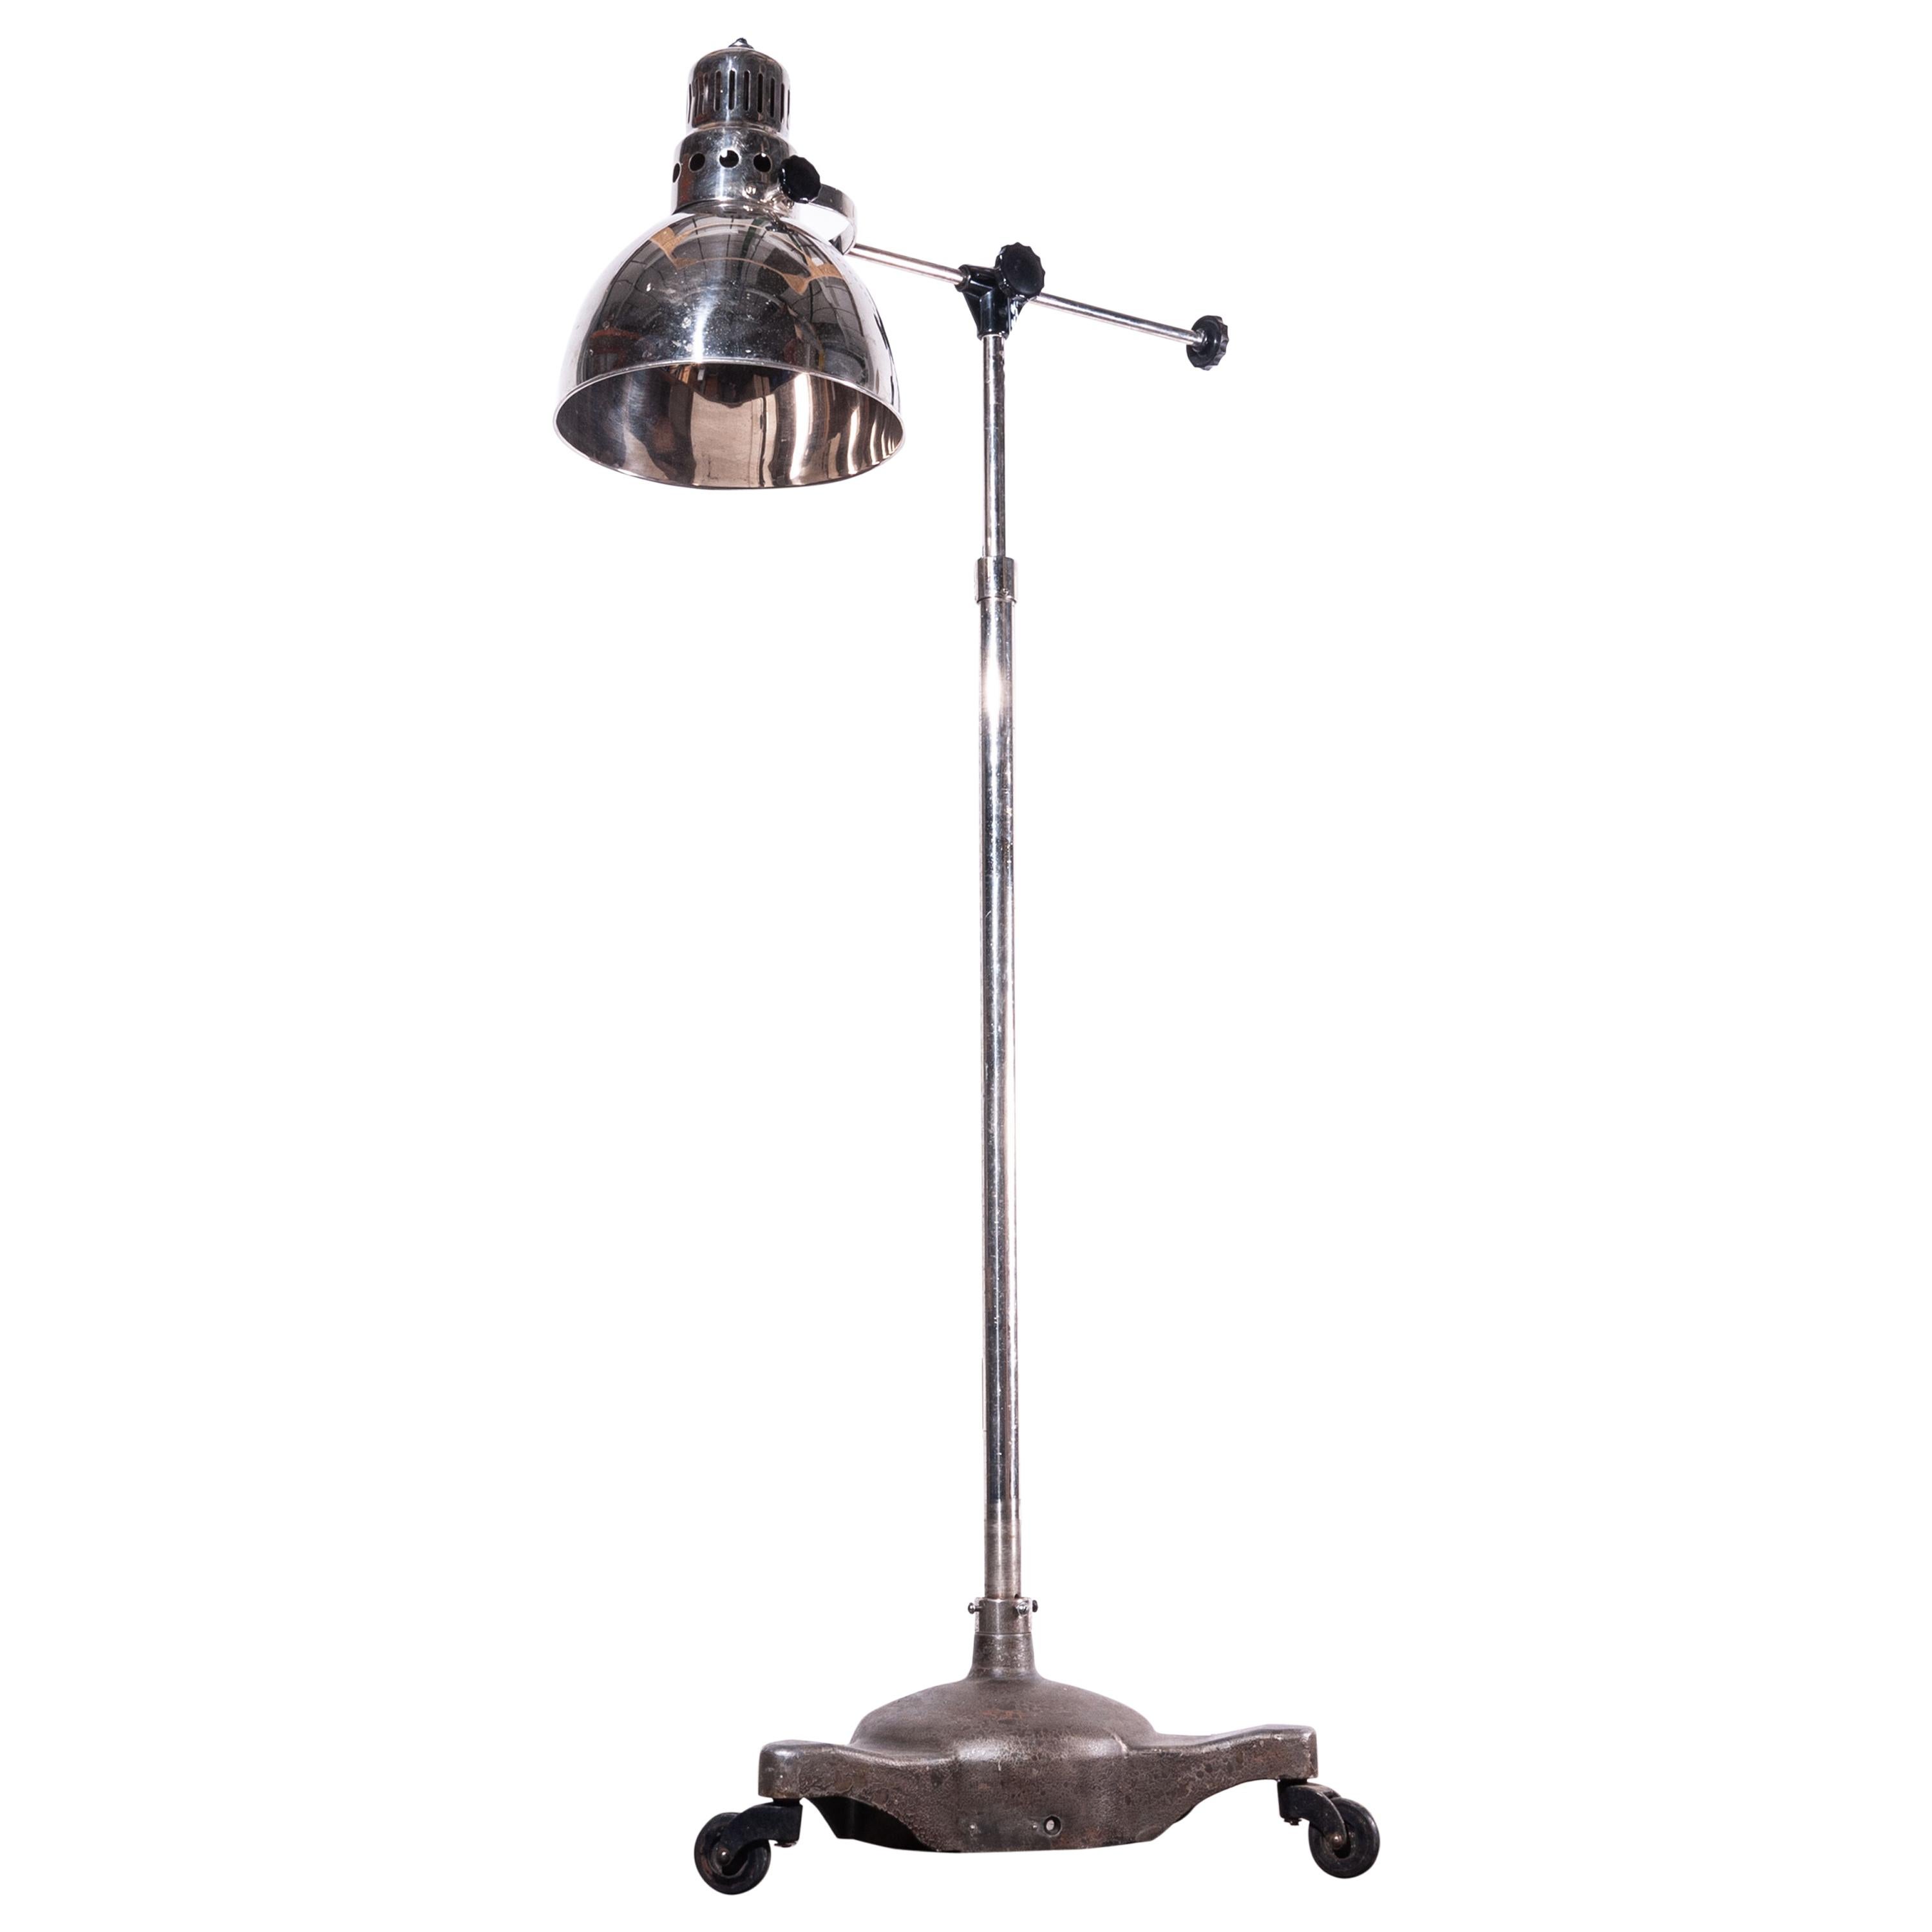 1950s Industrial Adjustable Chrome Floor Standing Lamp, Light, Swivel Base